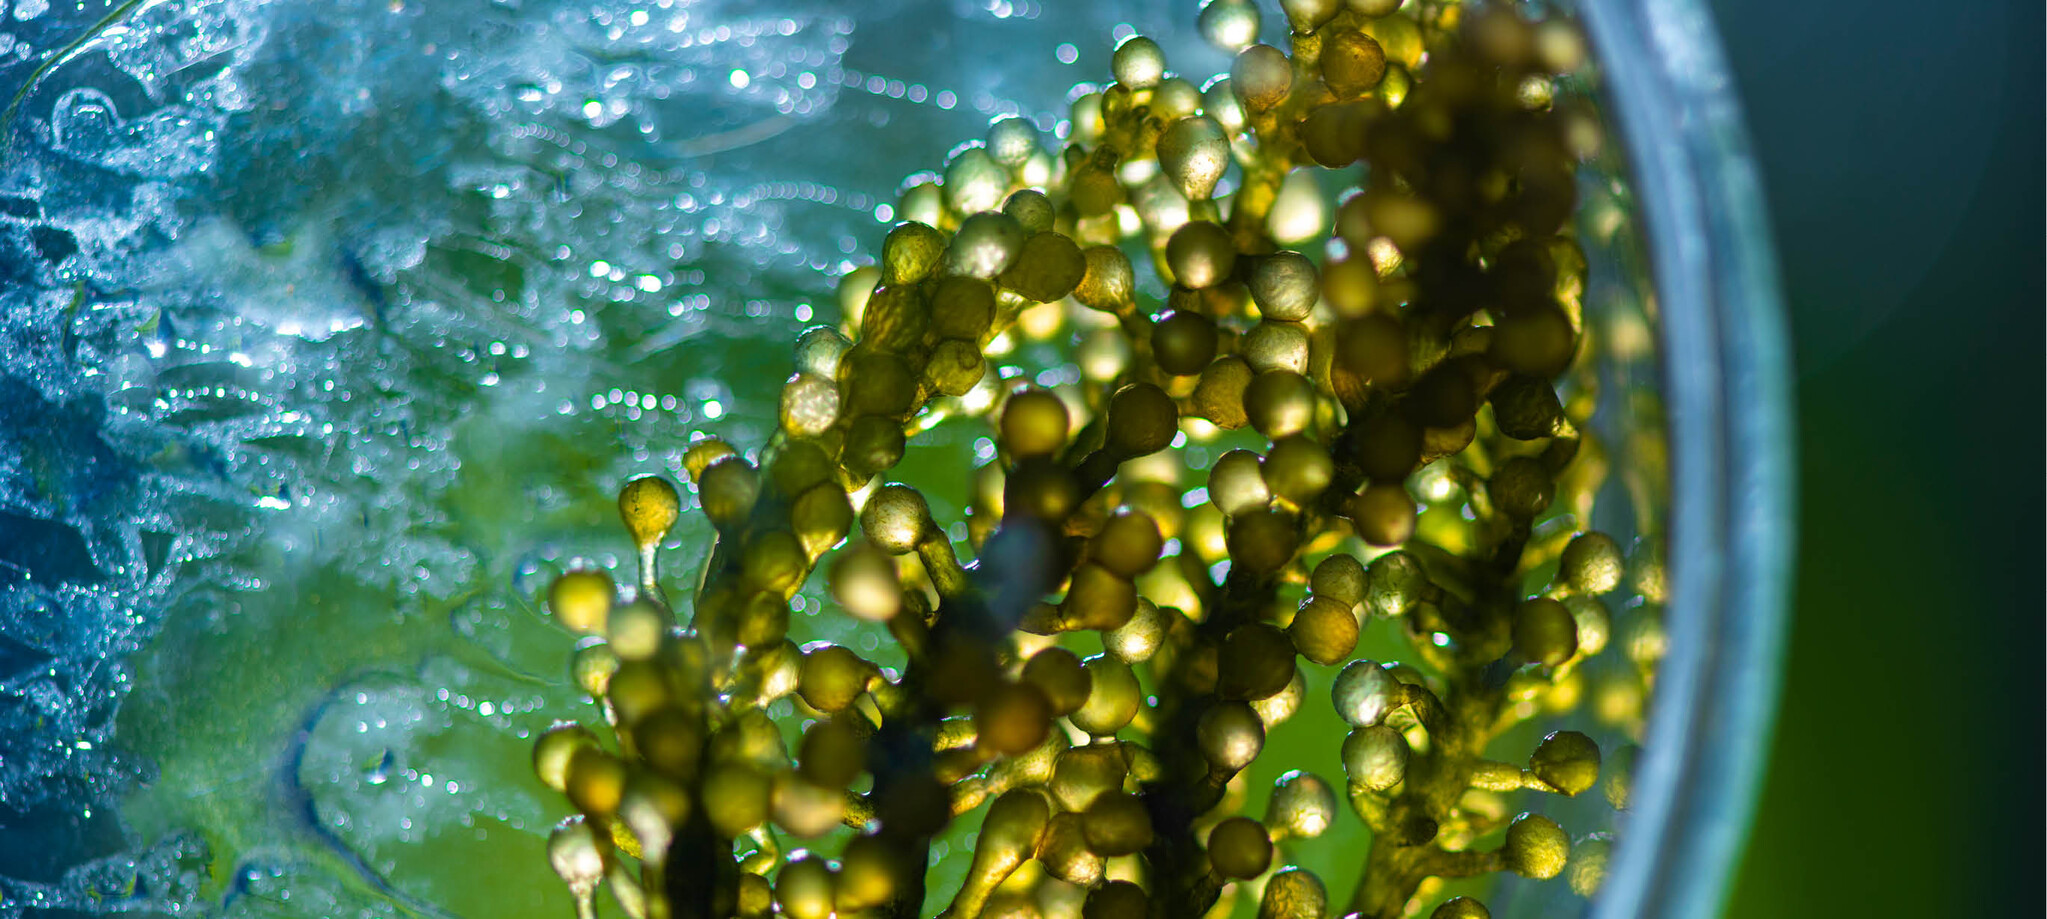 Algenolie: De groene kracht van de oceaan 